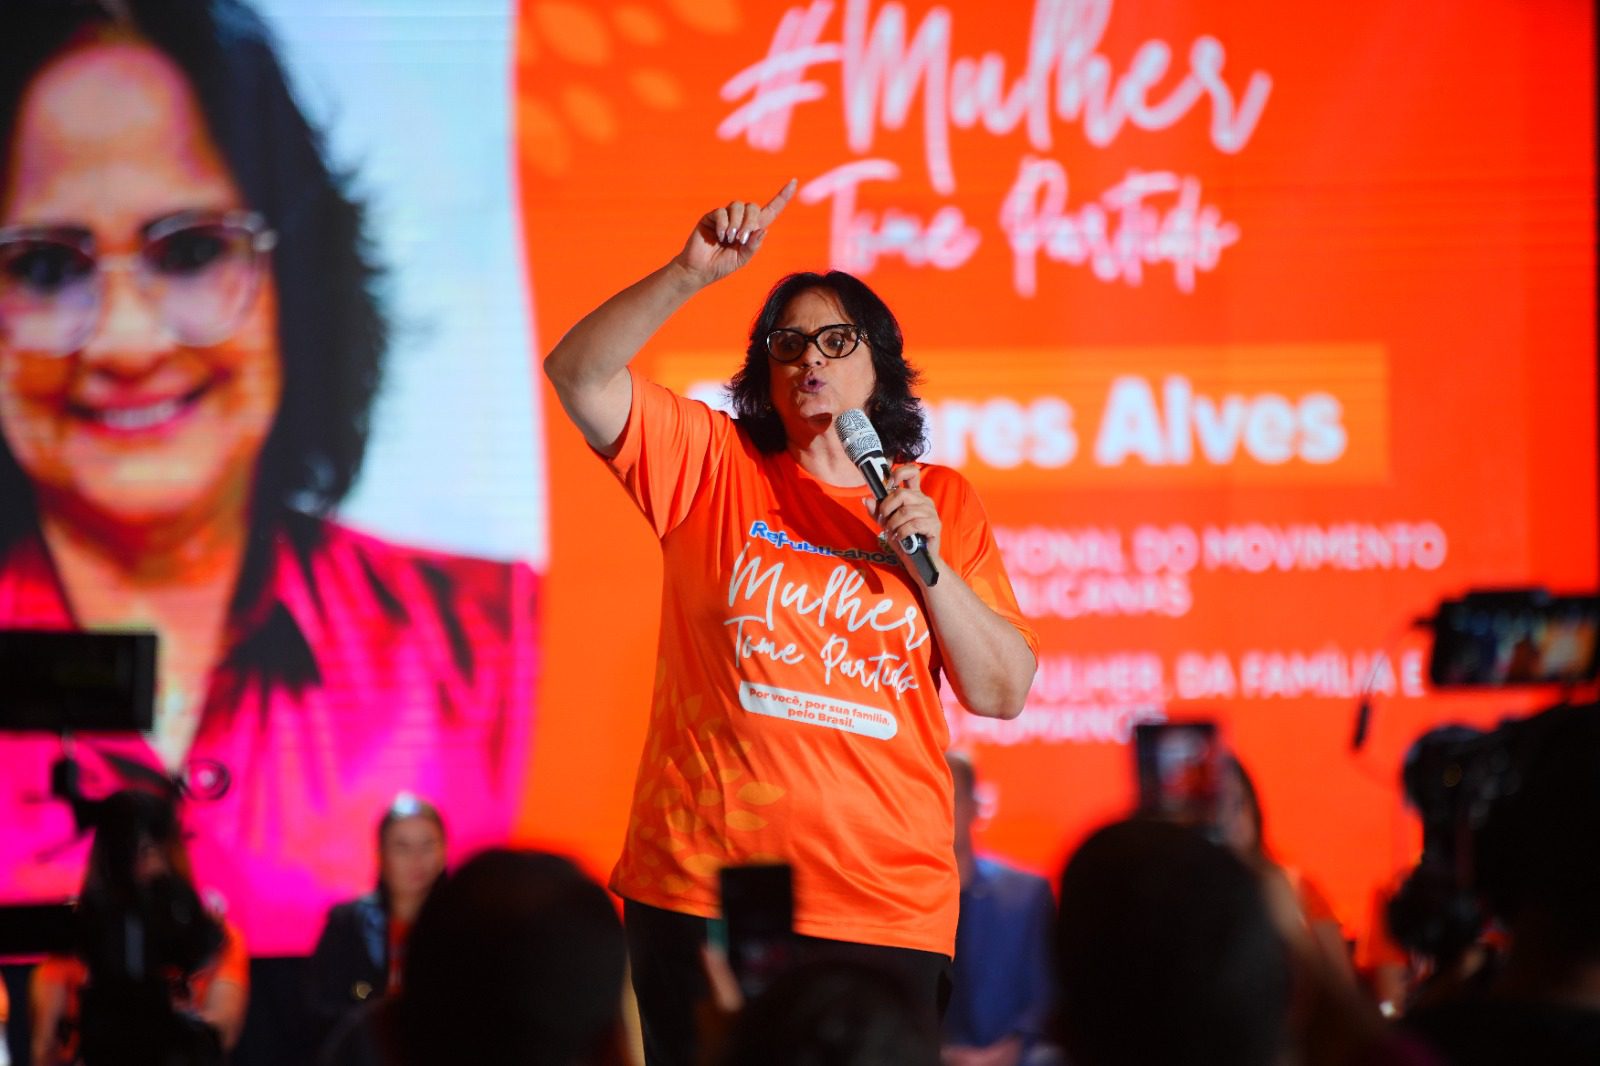 Senadora Damares Alves assume liderança no movimento “Mulher, Tome Partido” em Vitória